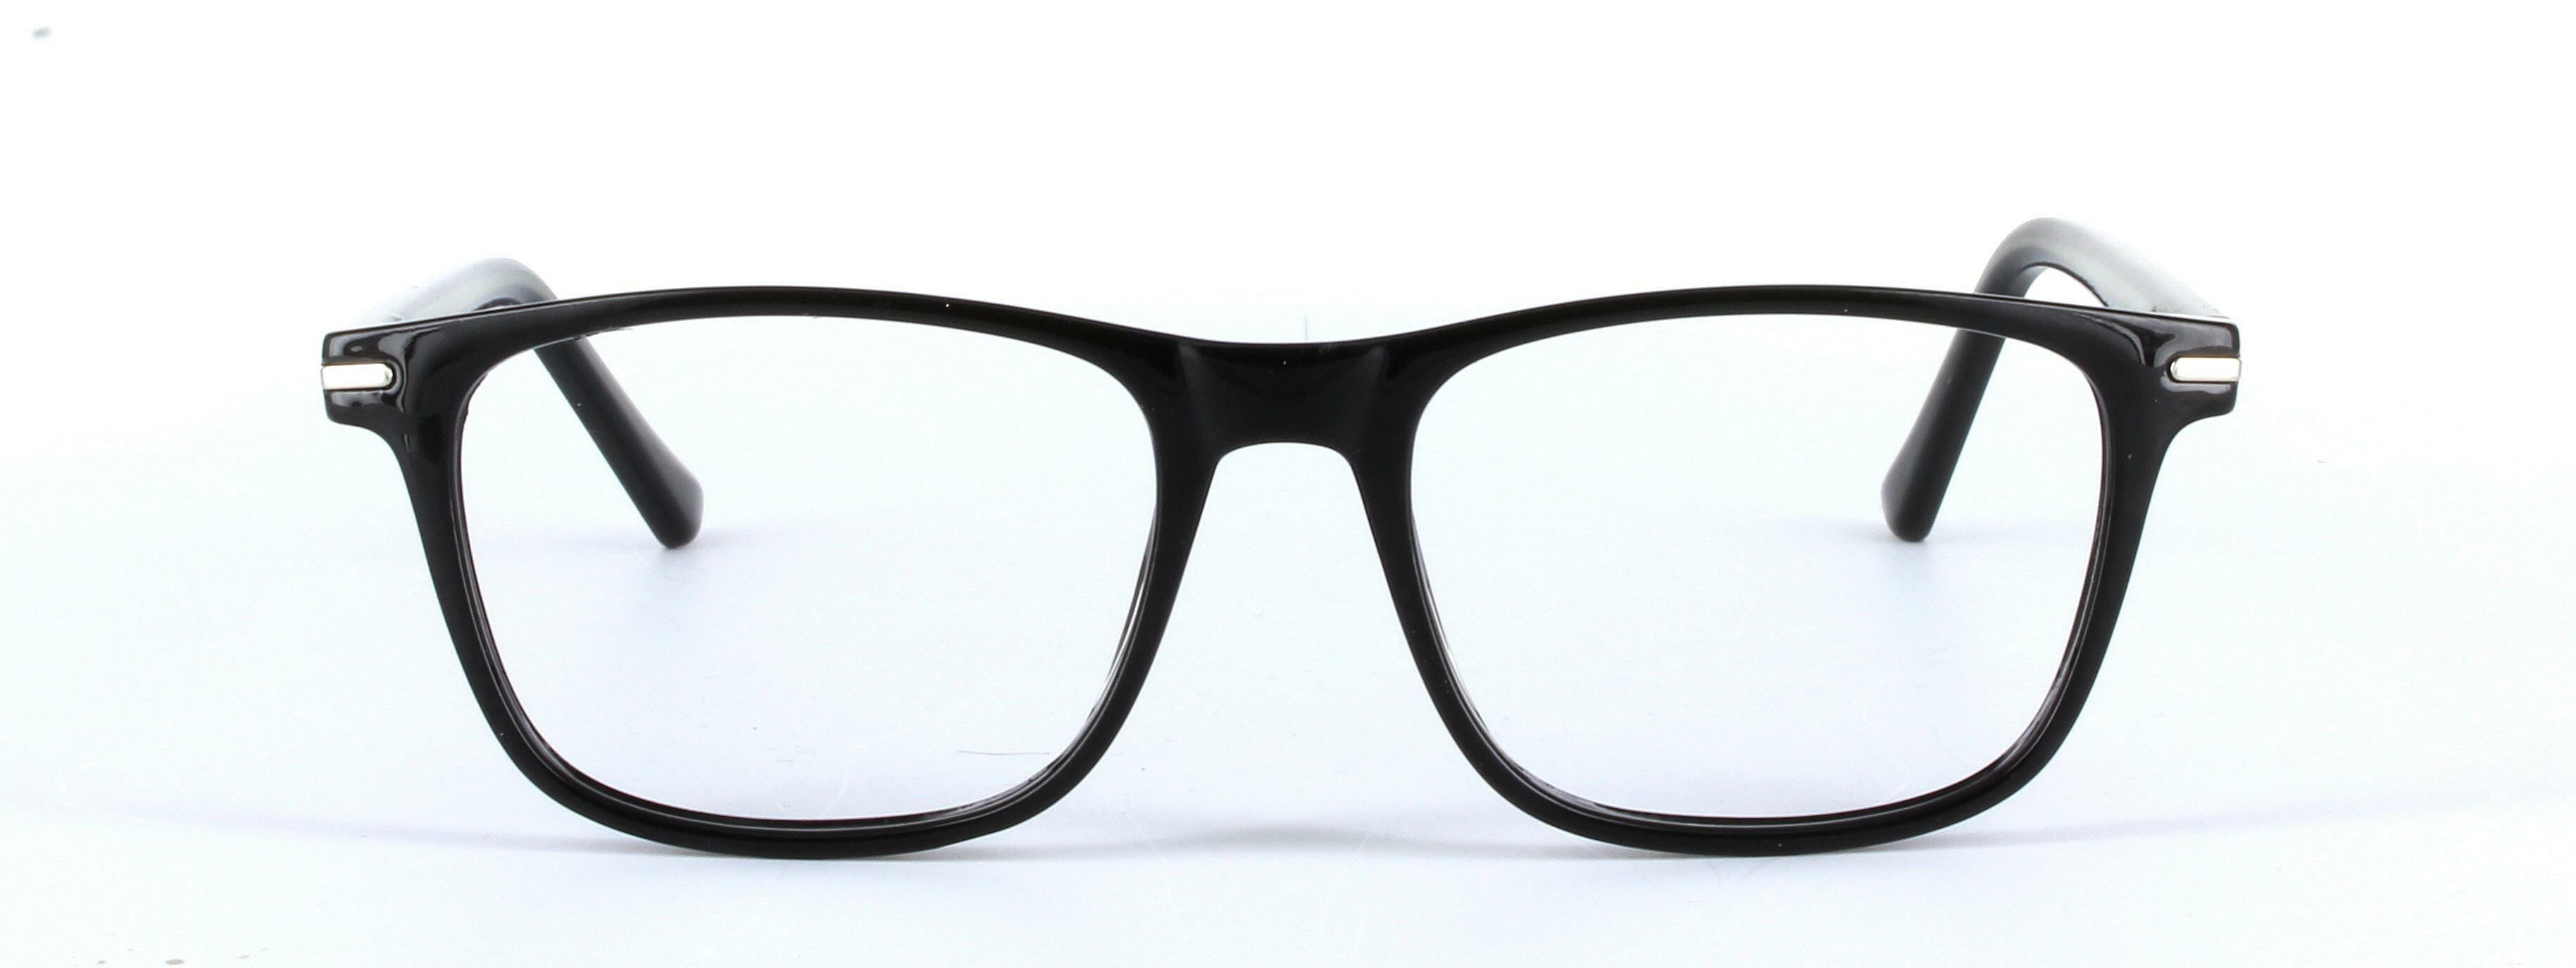 Consul Black Full Rim Oval Round Plastic Glasses - Image View 5